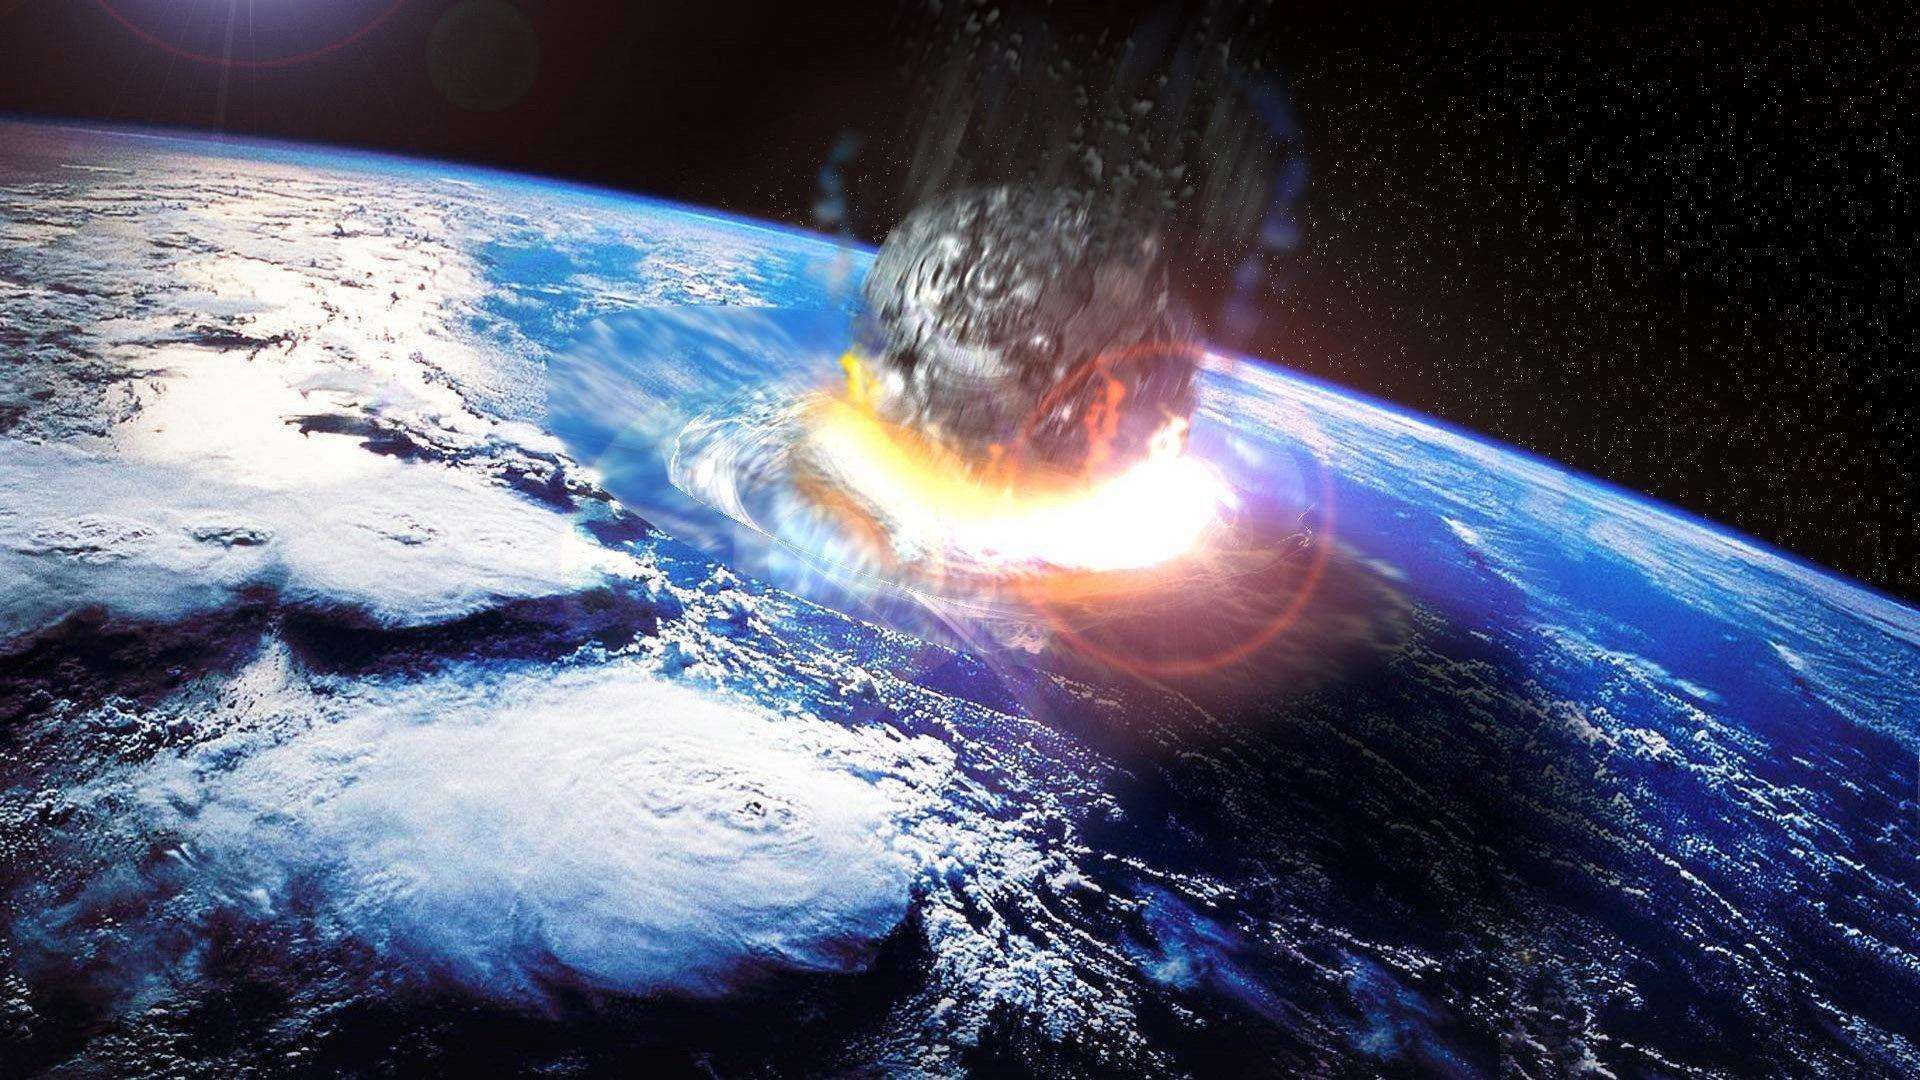 原创毁灭恐龙的小行星现在撞击地球人类与恐龙相比结局有所不同